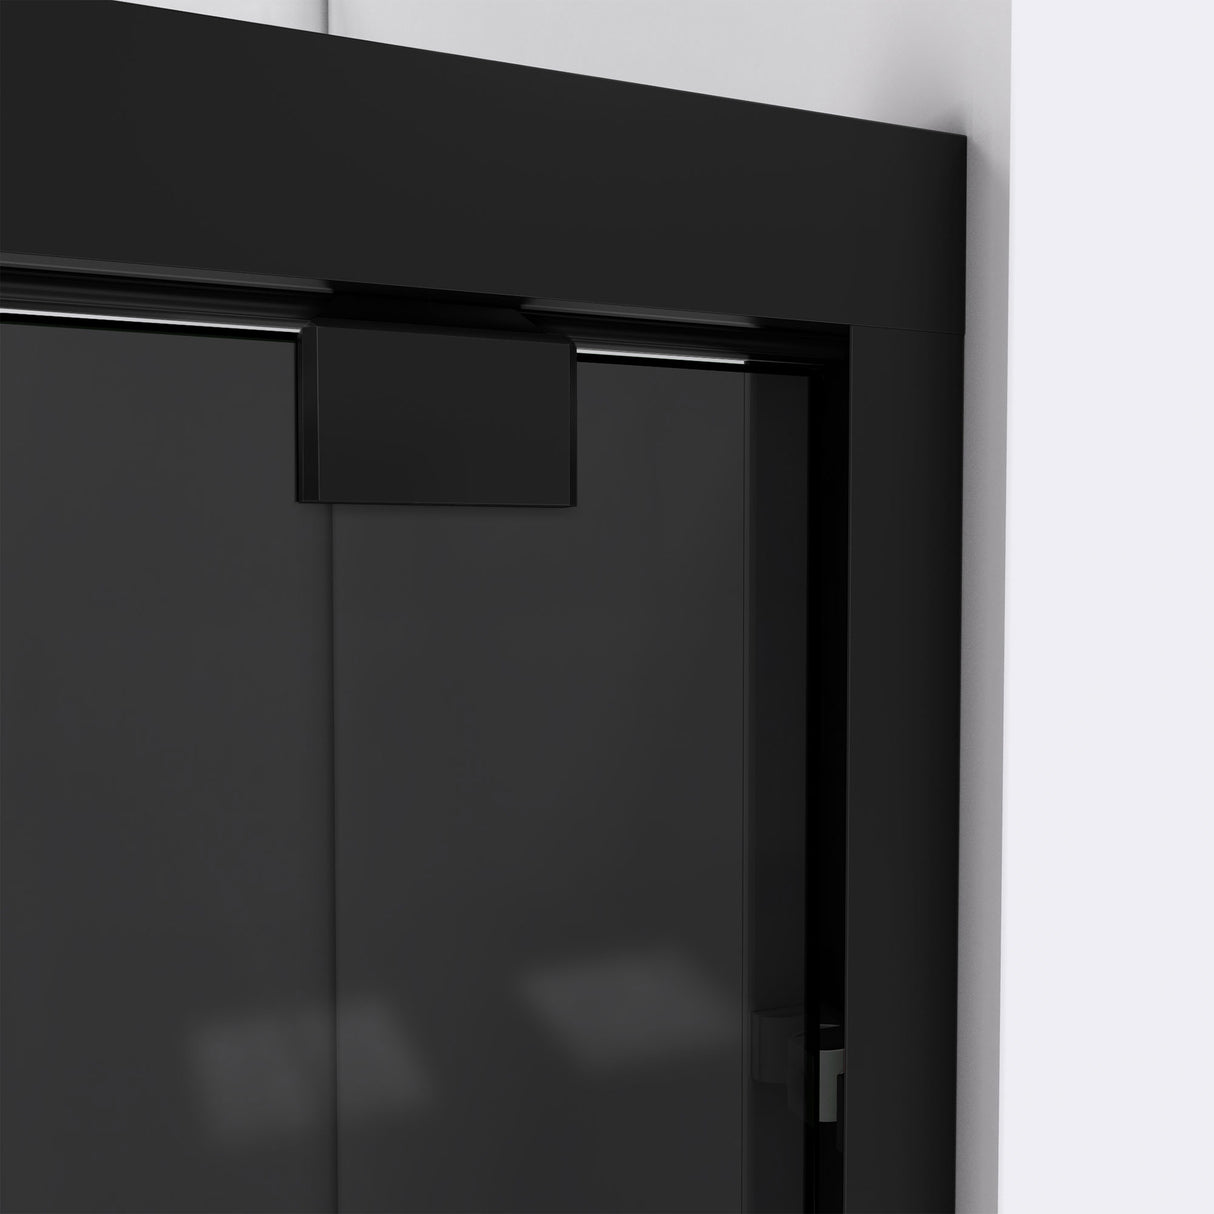 DreamLine Encore 56-60 in. W x 76 in. H Semi-Frameless Bypass Sliding Shower Door in Satin Black and Gray Glass